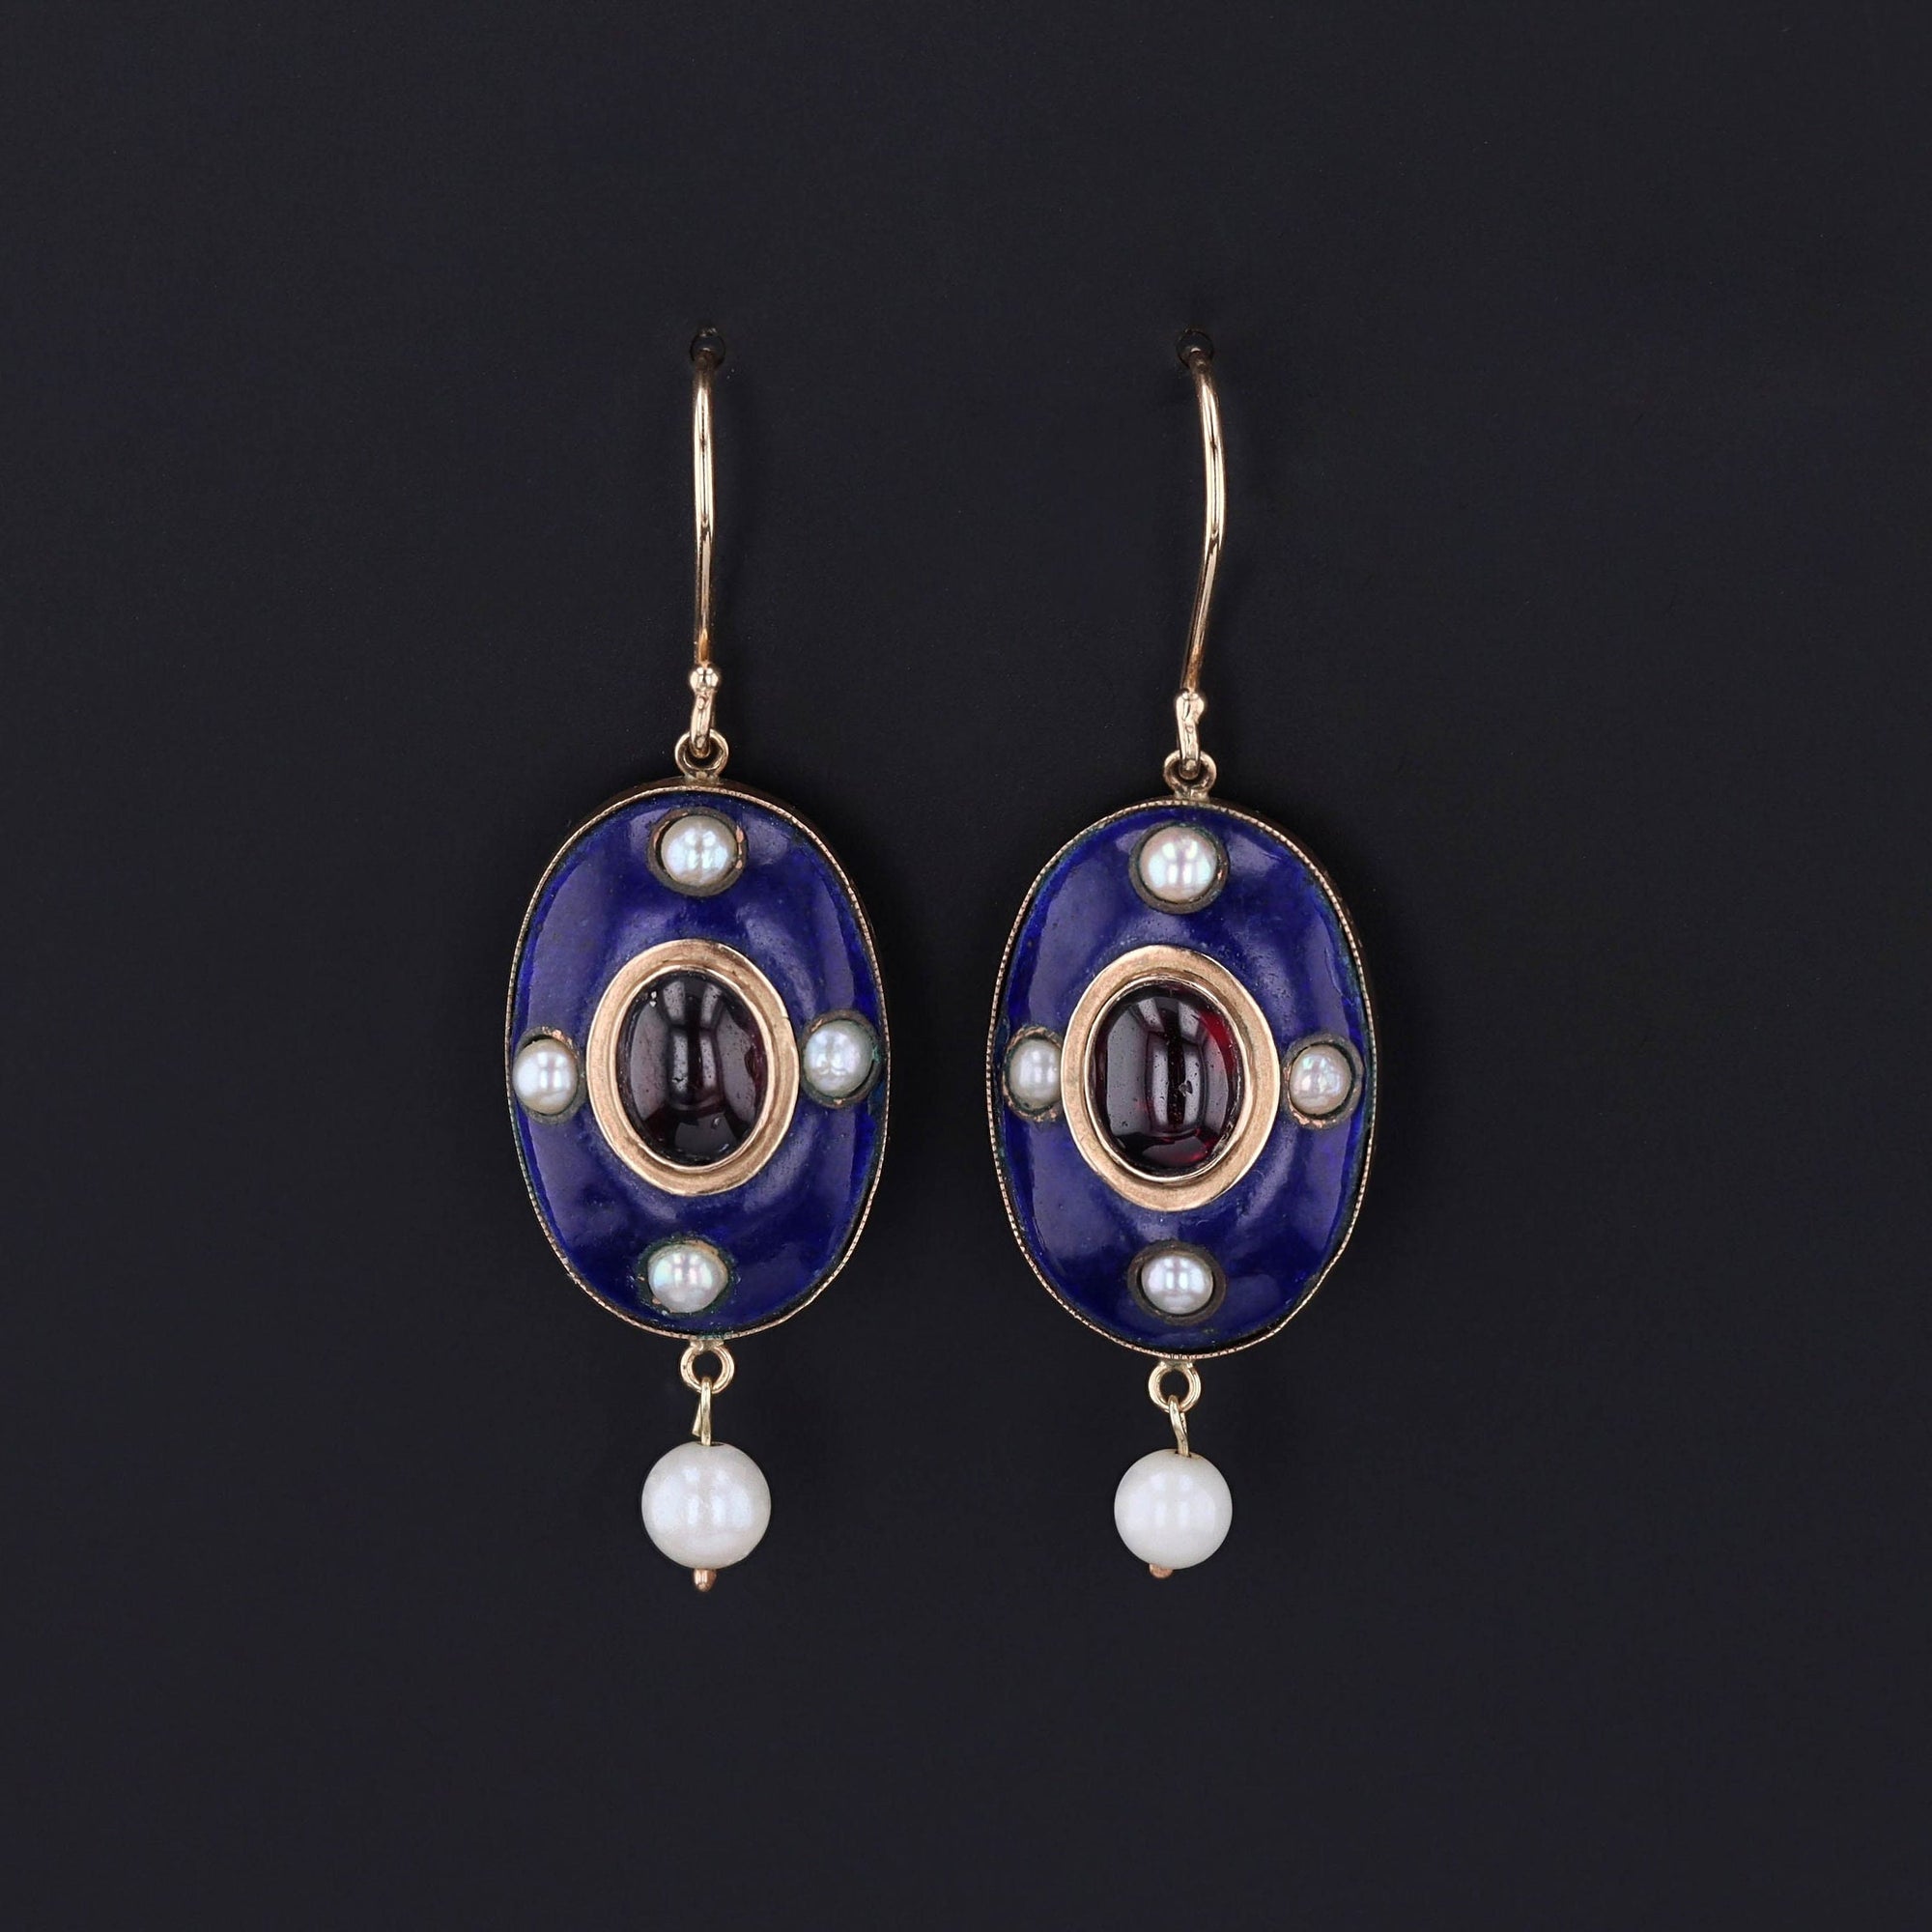 Antique Garnet Earrings | Victorian Earrings 